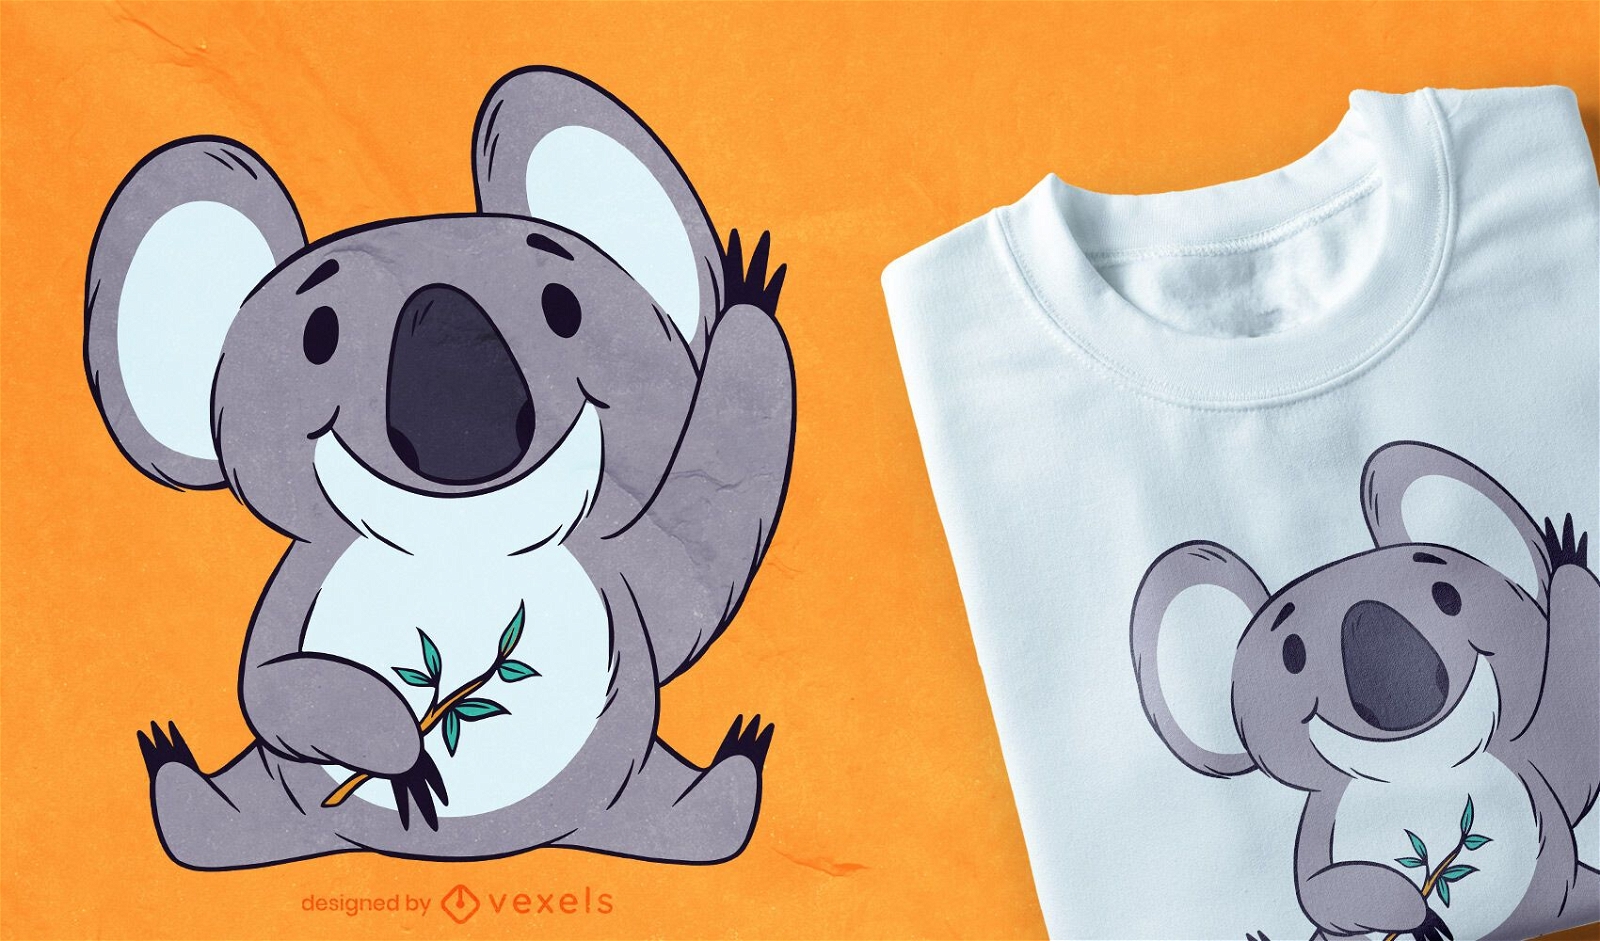 Cute koala t-shirt design